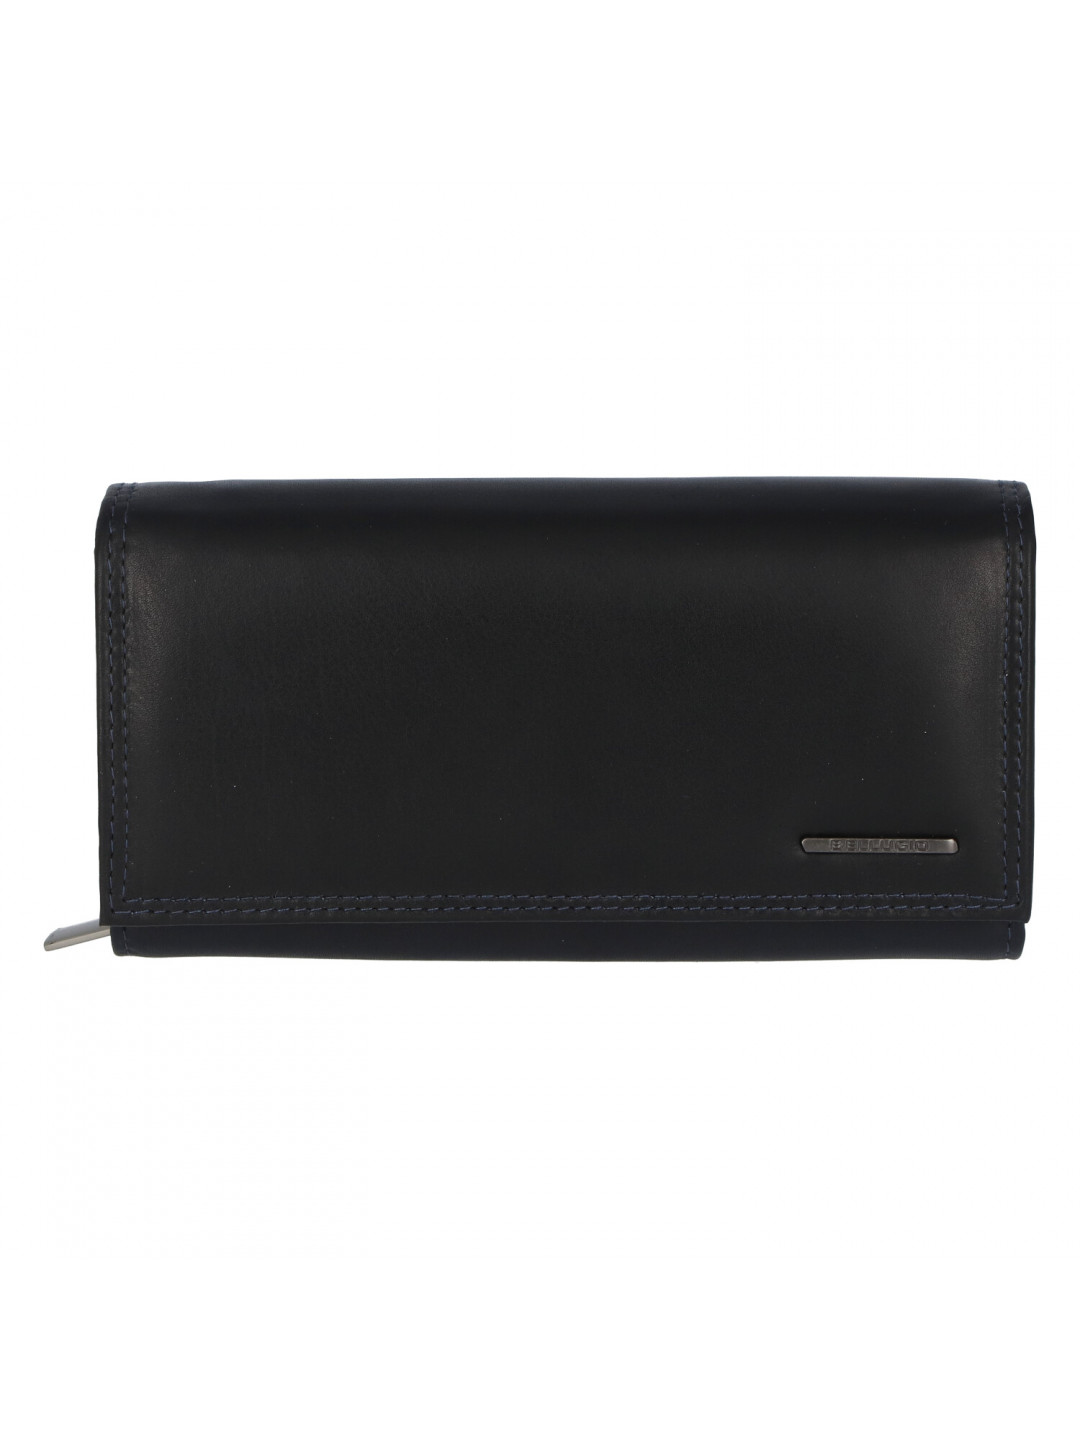 Dámská kožená peněženka modro černá – Bellugio Sofia New